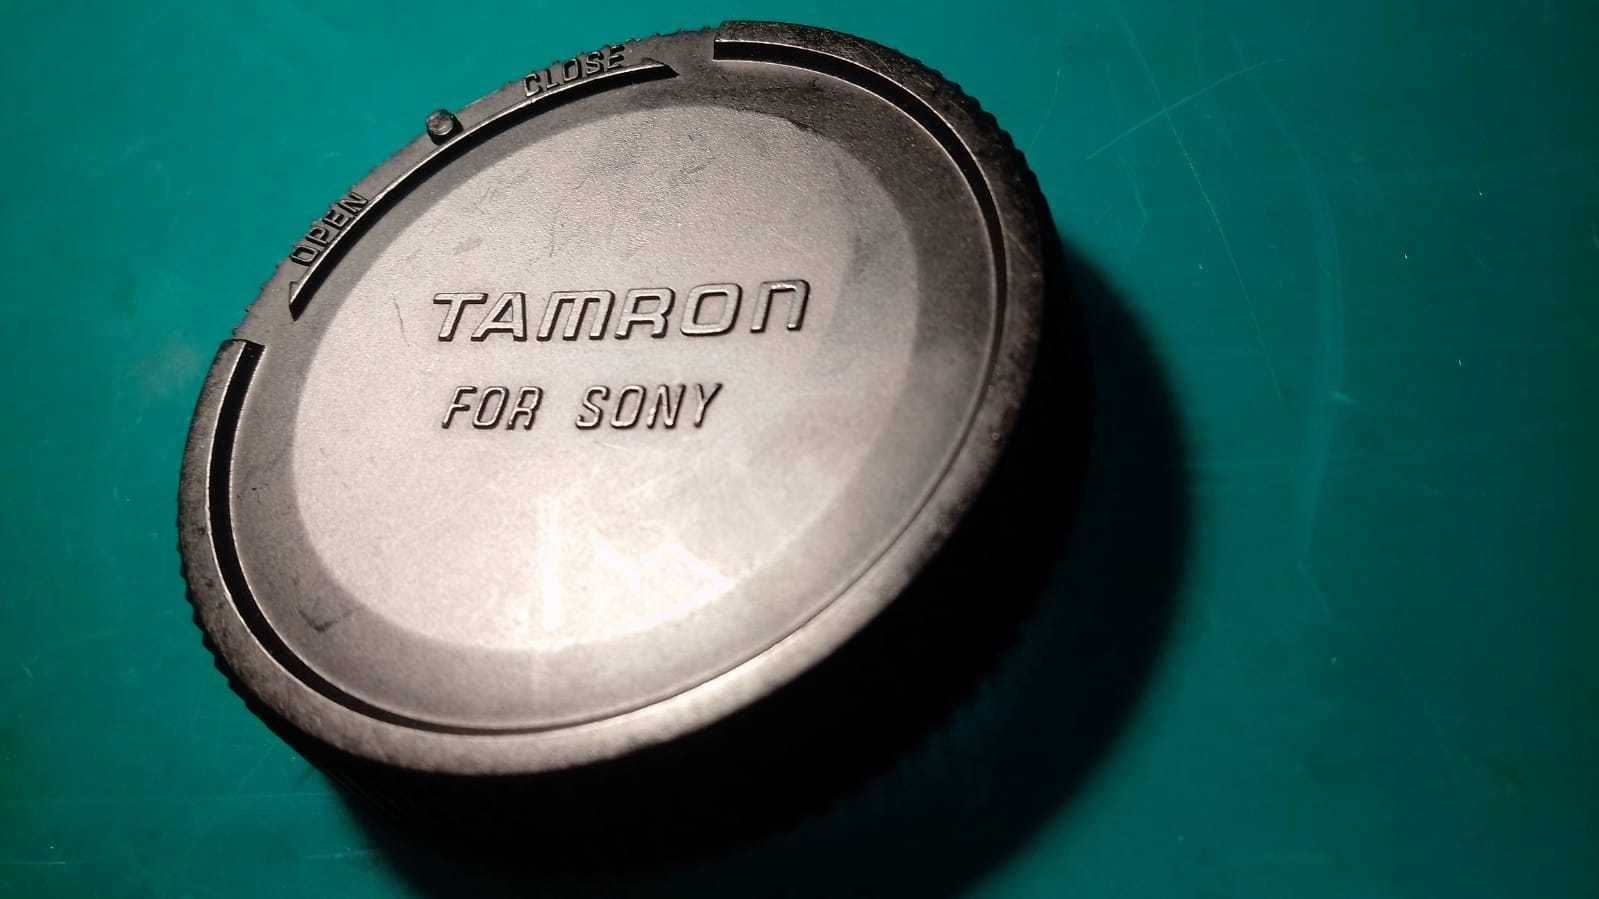 Tamron for Sony /// Tamron 70-300